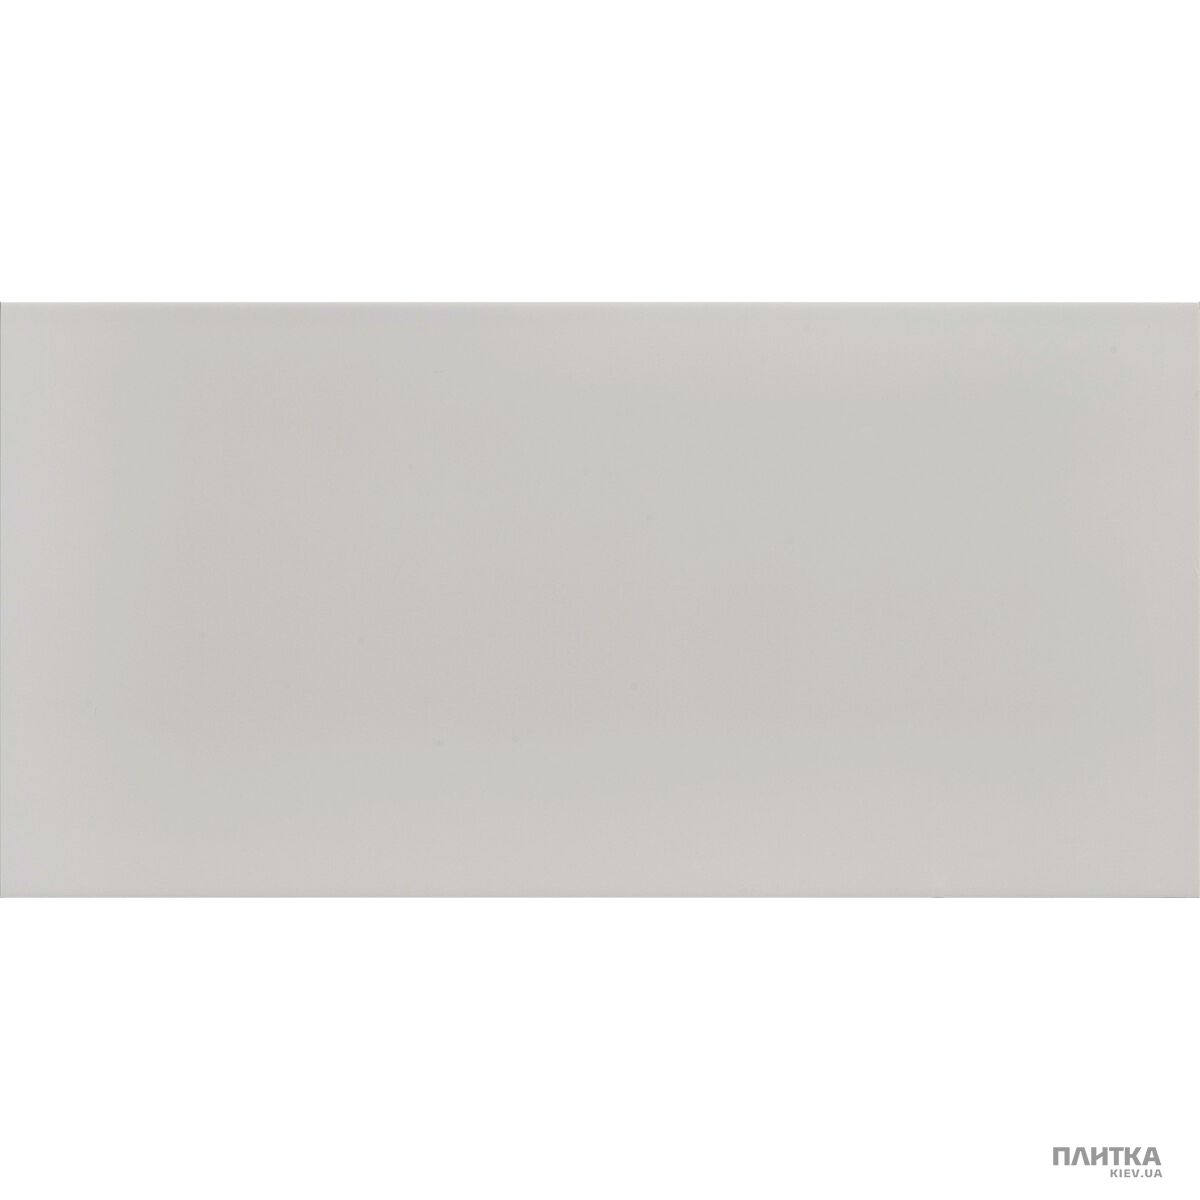 Плитка Imola Anthea ANTHEA 36G серый